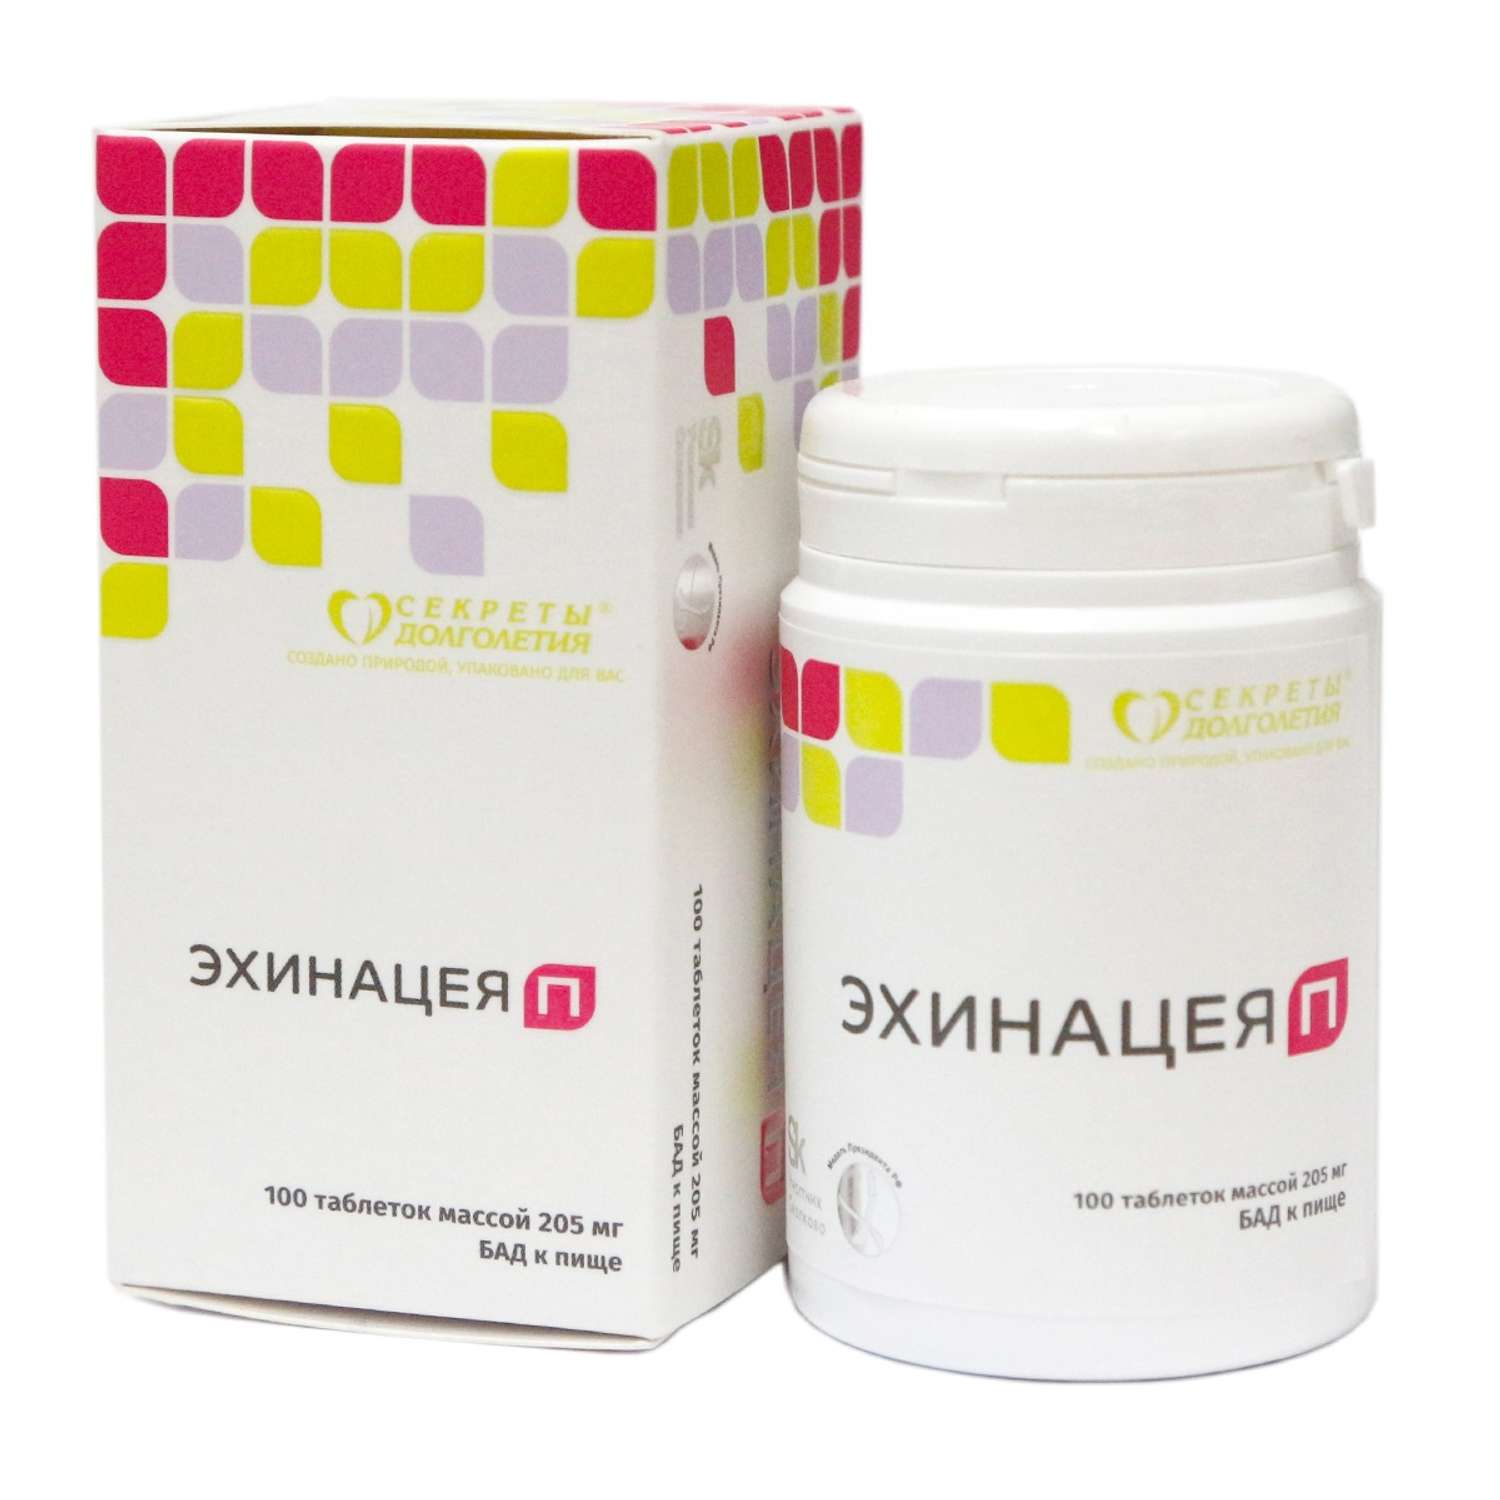 Витаминный комплекс Парафарм Эхинацея П. 2 упаковки по 100 таблеток - фото 2